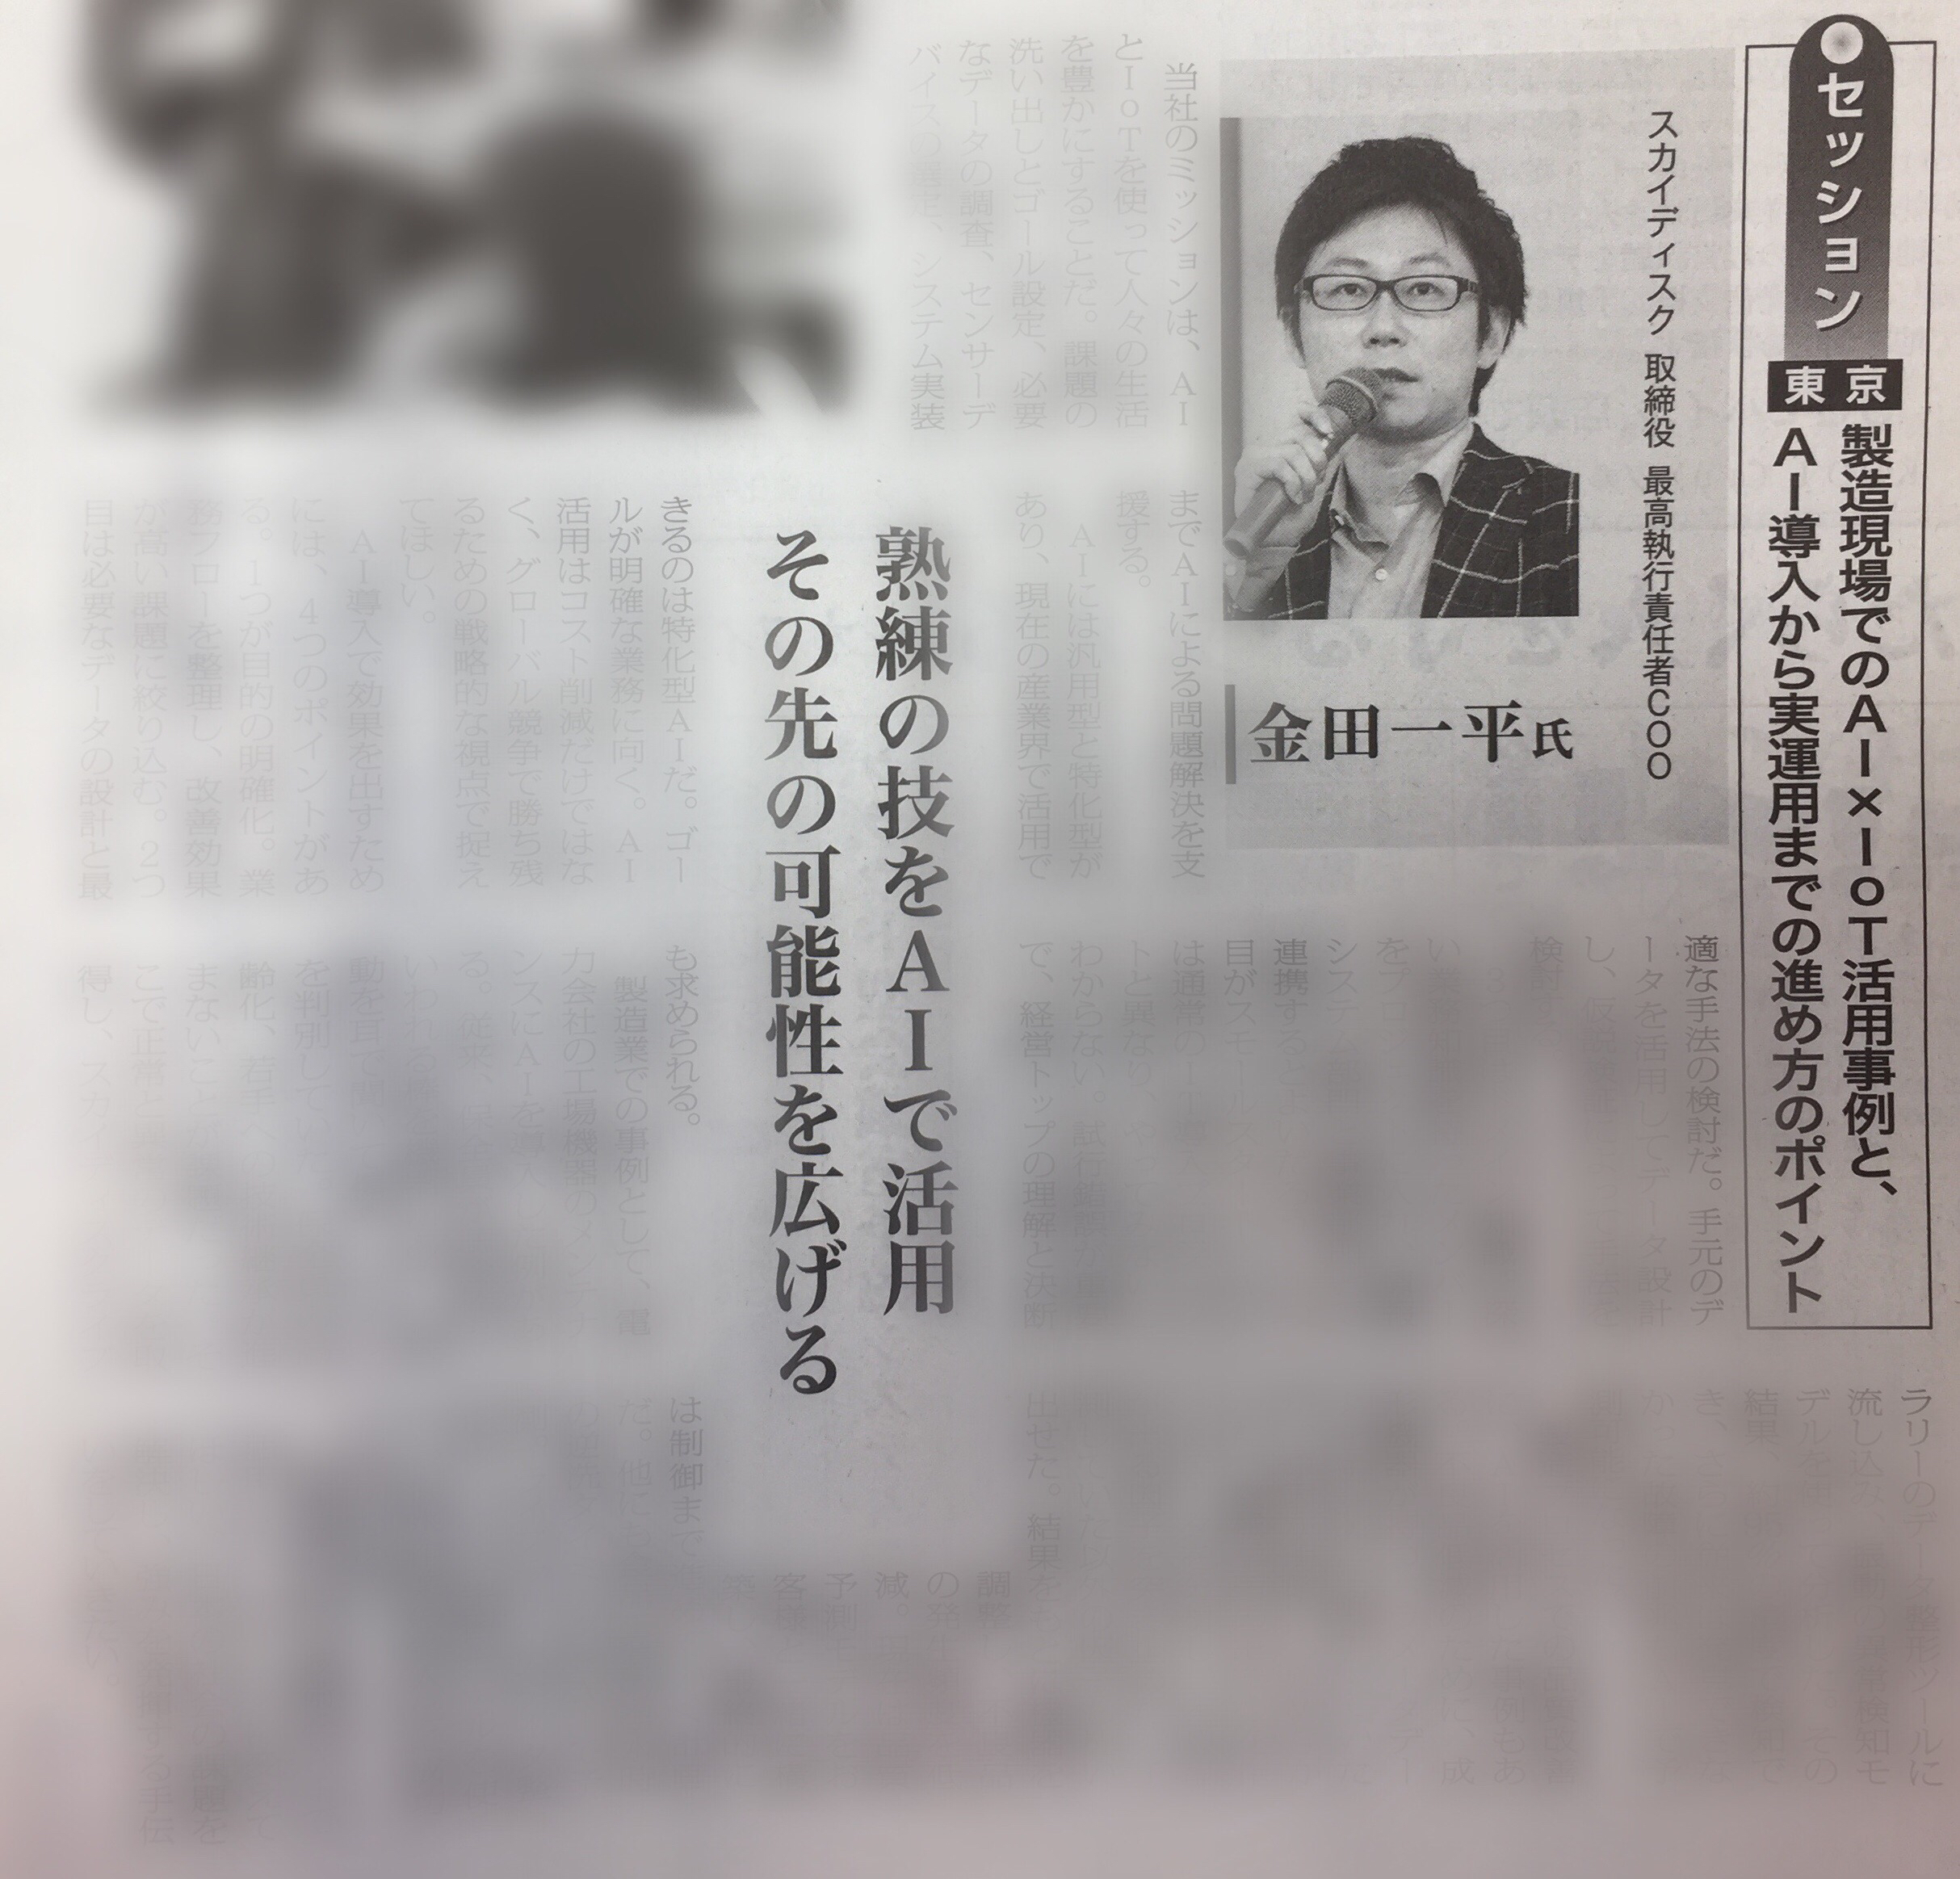 日経産業新聞にて「日経産業新聞フォーラム」に登壇した弊社金田が紹介されているときの新聞